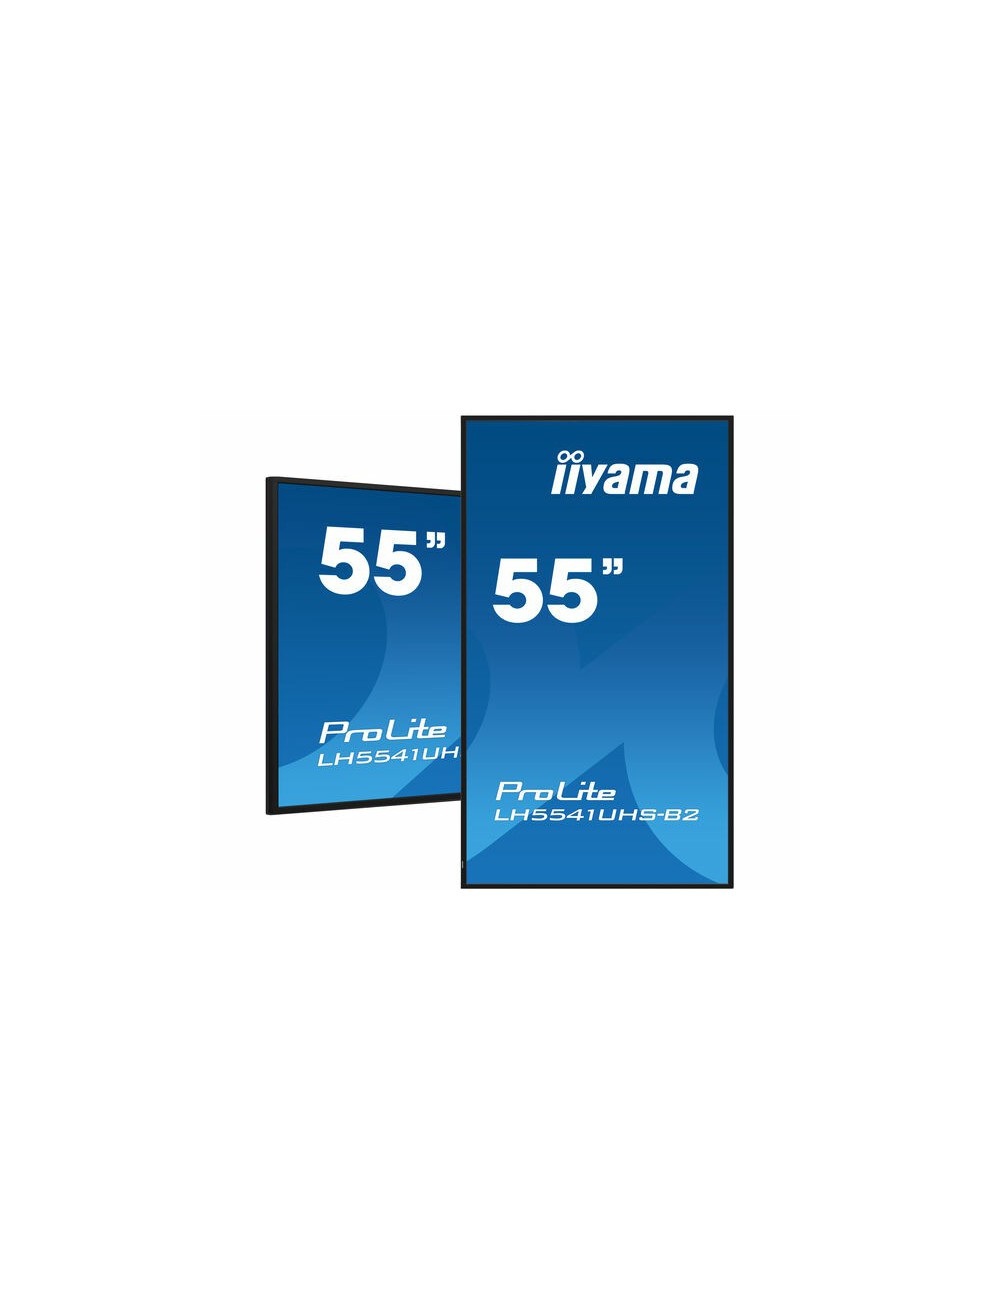 iiyama LH5541UHS-B2 affichage de messages En forme de kiosk 138,7 cm (54.6") LCD 500 cd m² 4K Ultra HD Noir Intégré dans le